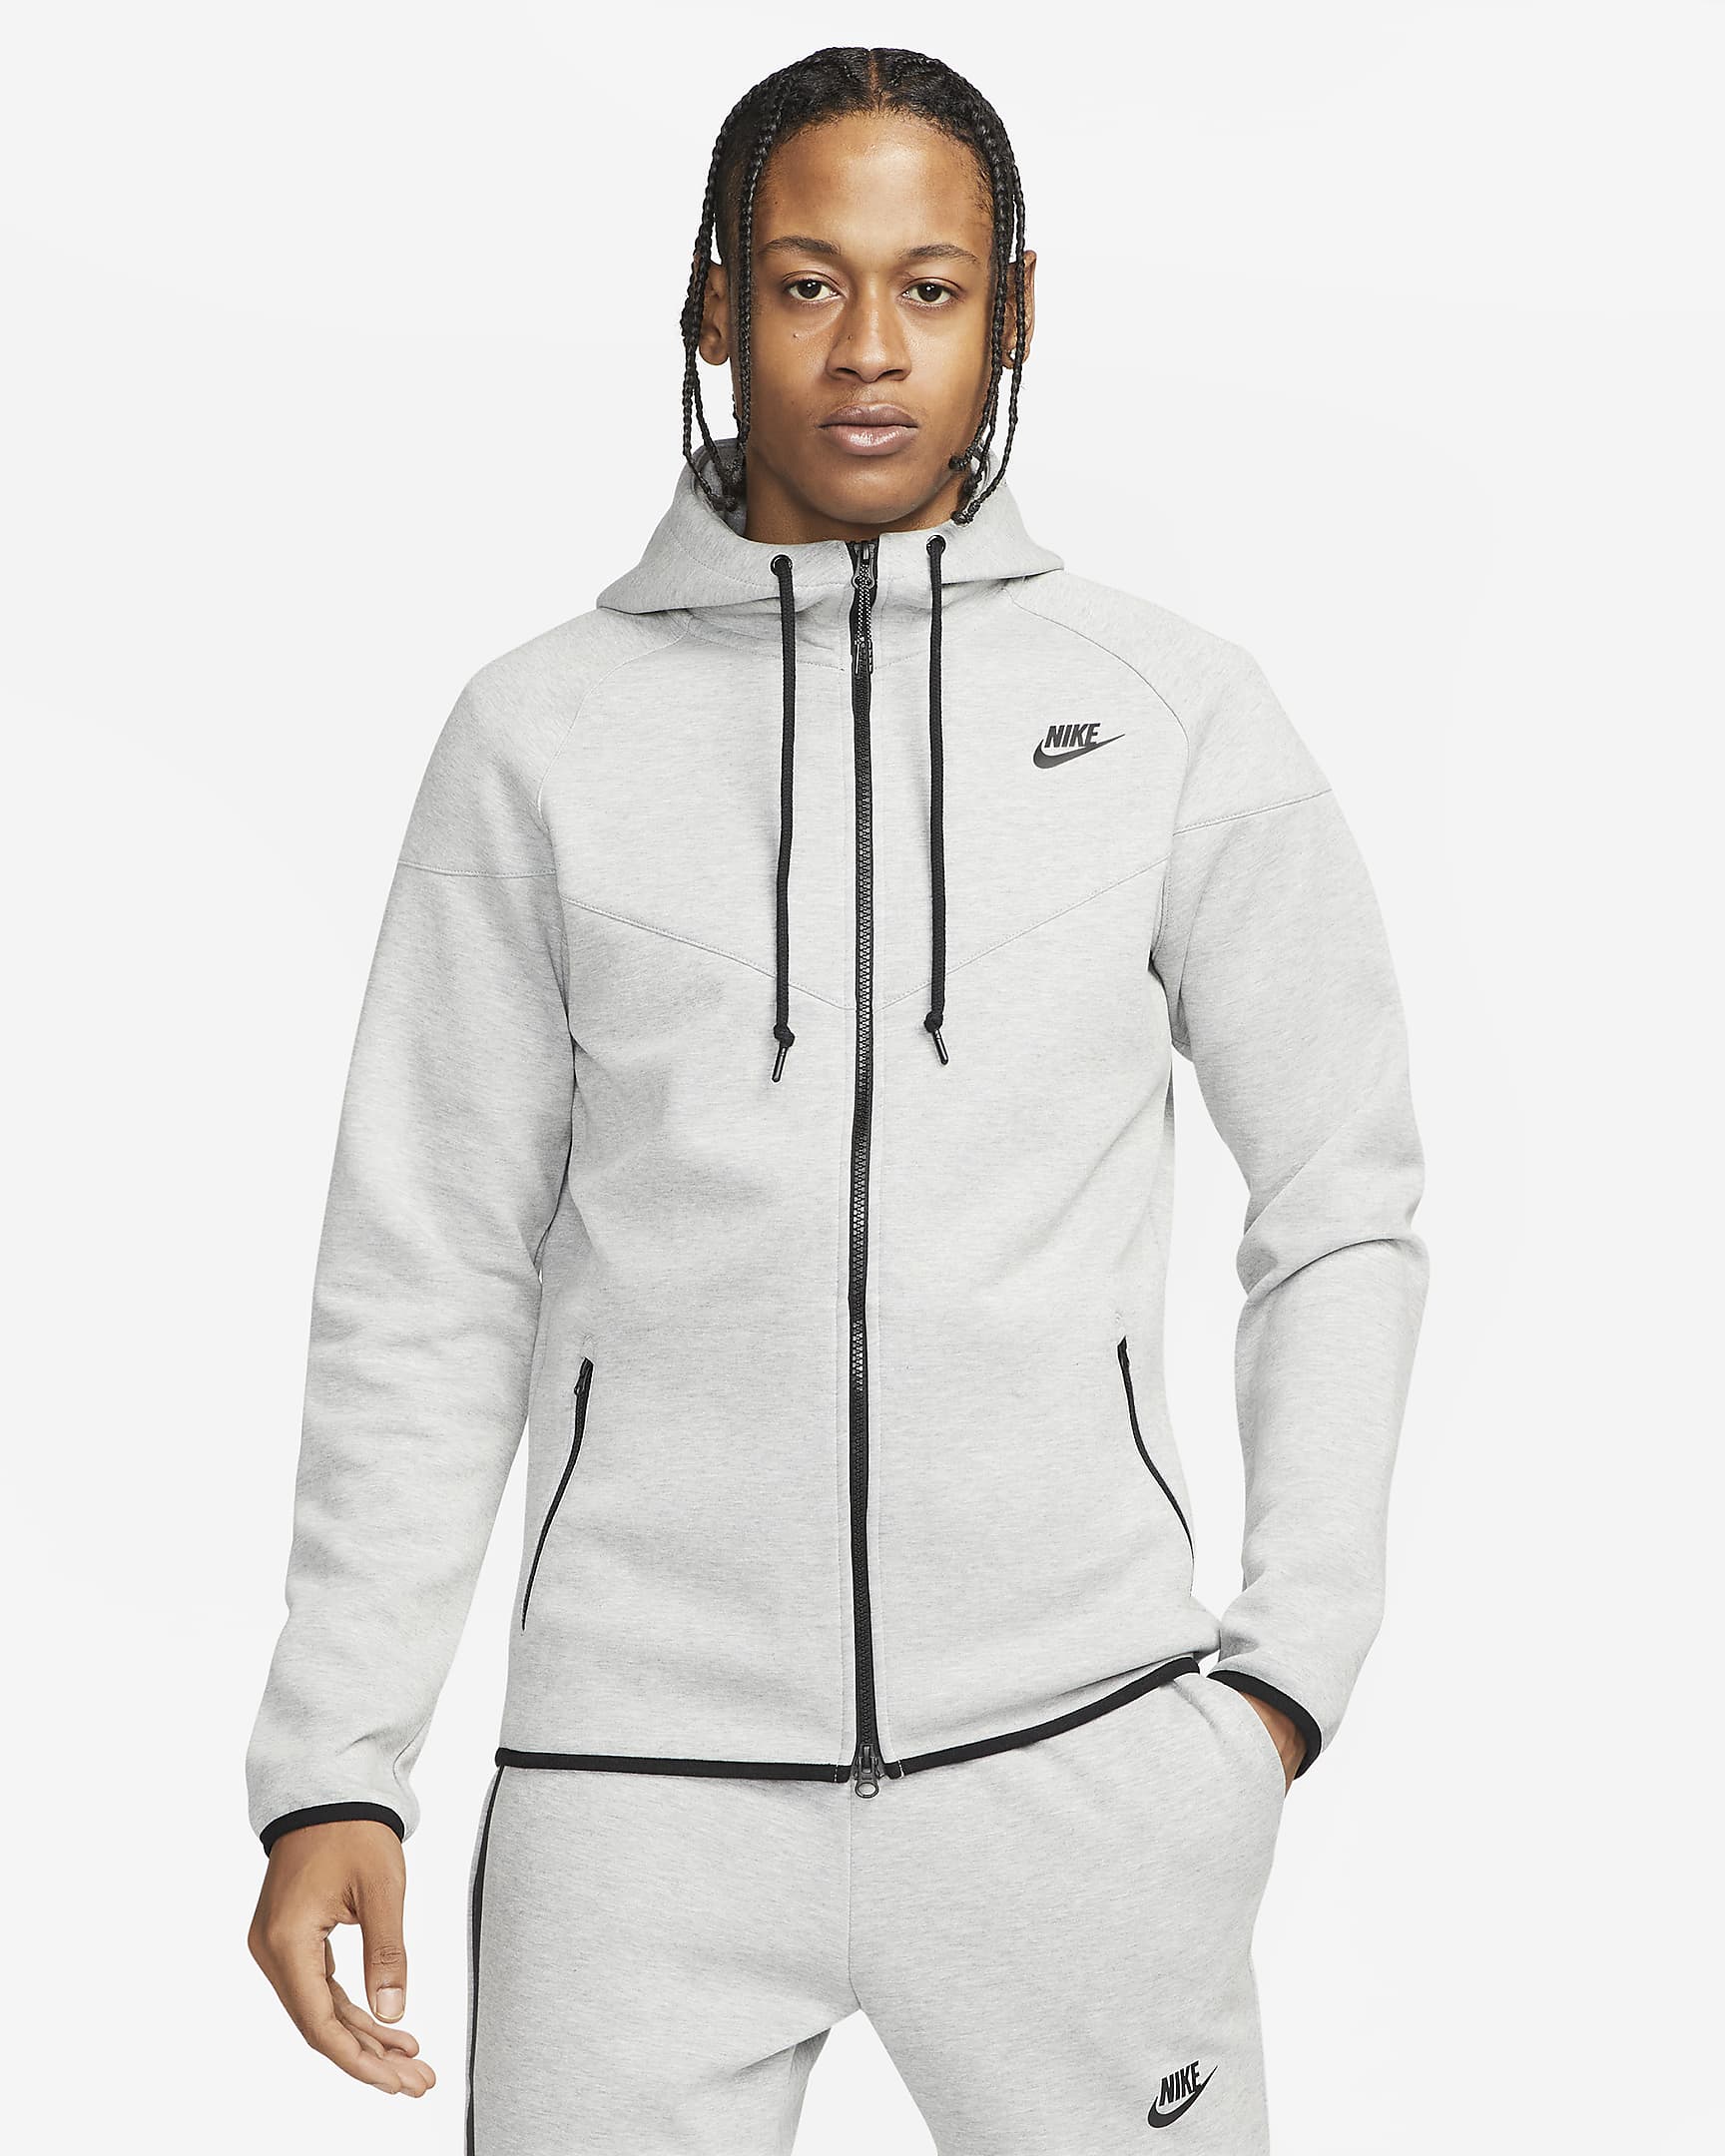 Nike Sportswear Tech Fleece OG Men's Full-Zip Hoodie Sweatshirt. Nike SG